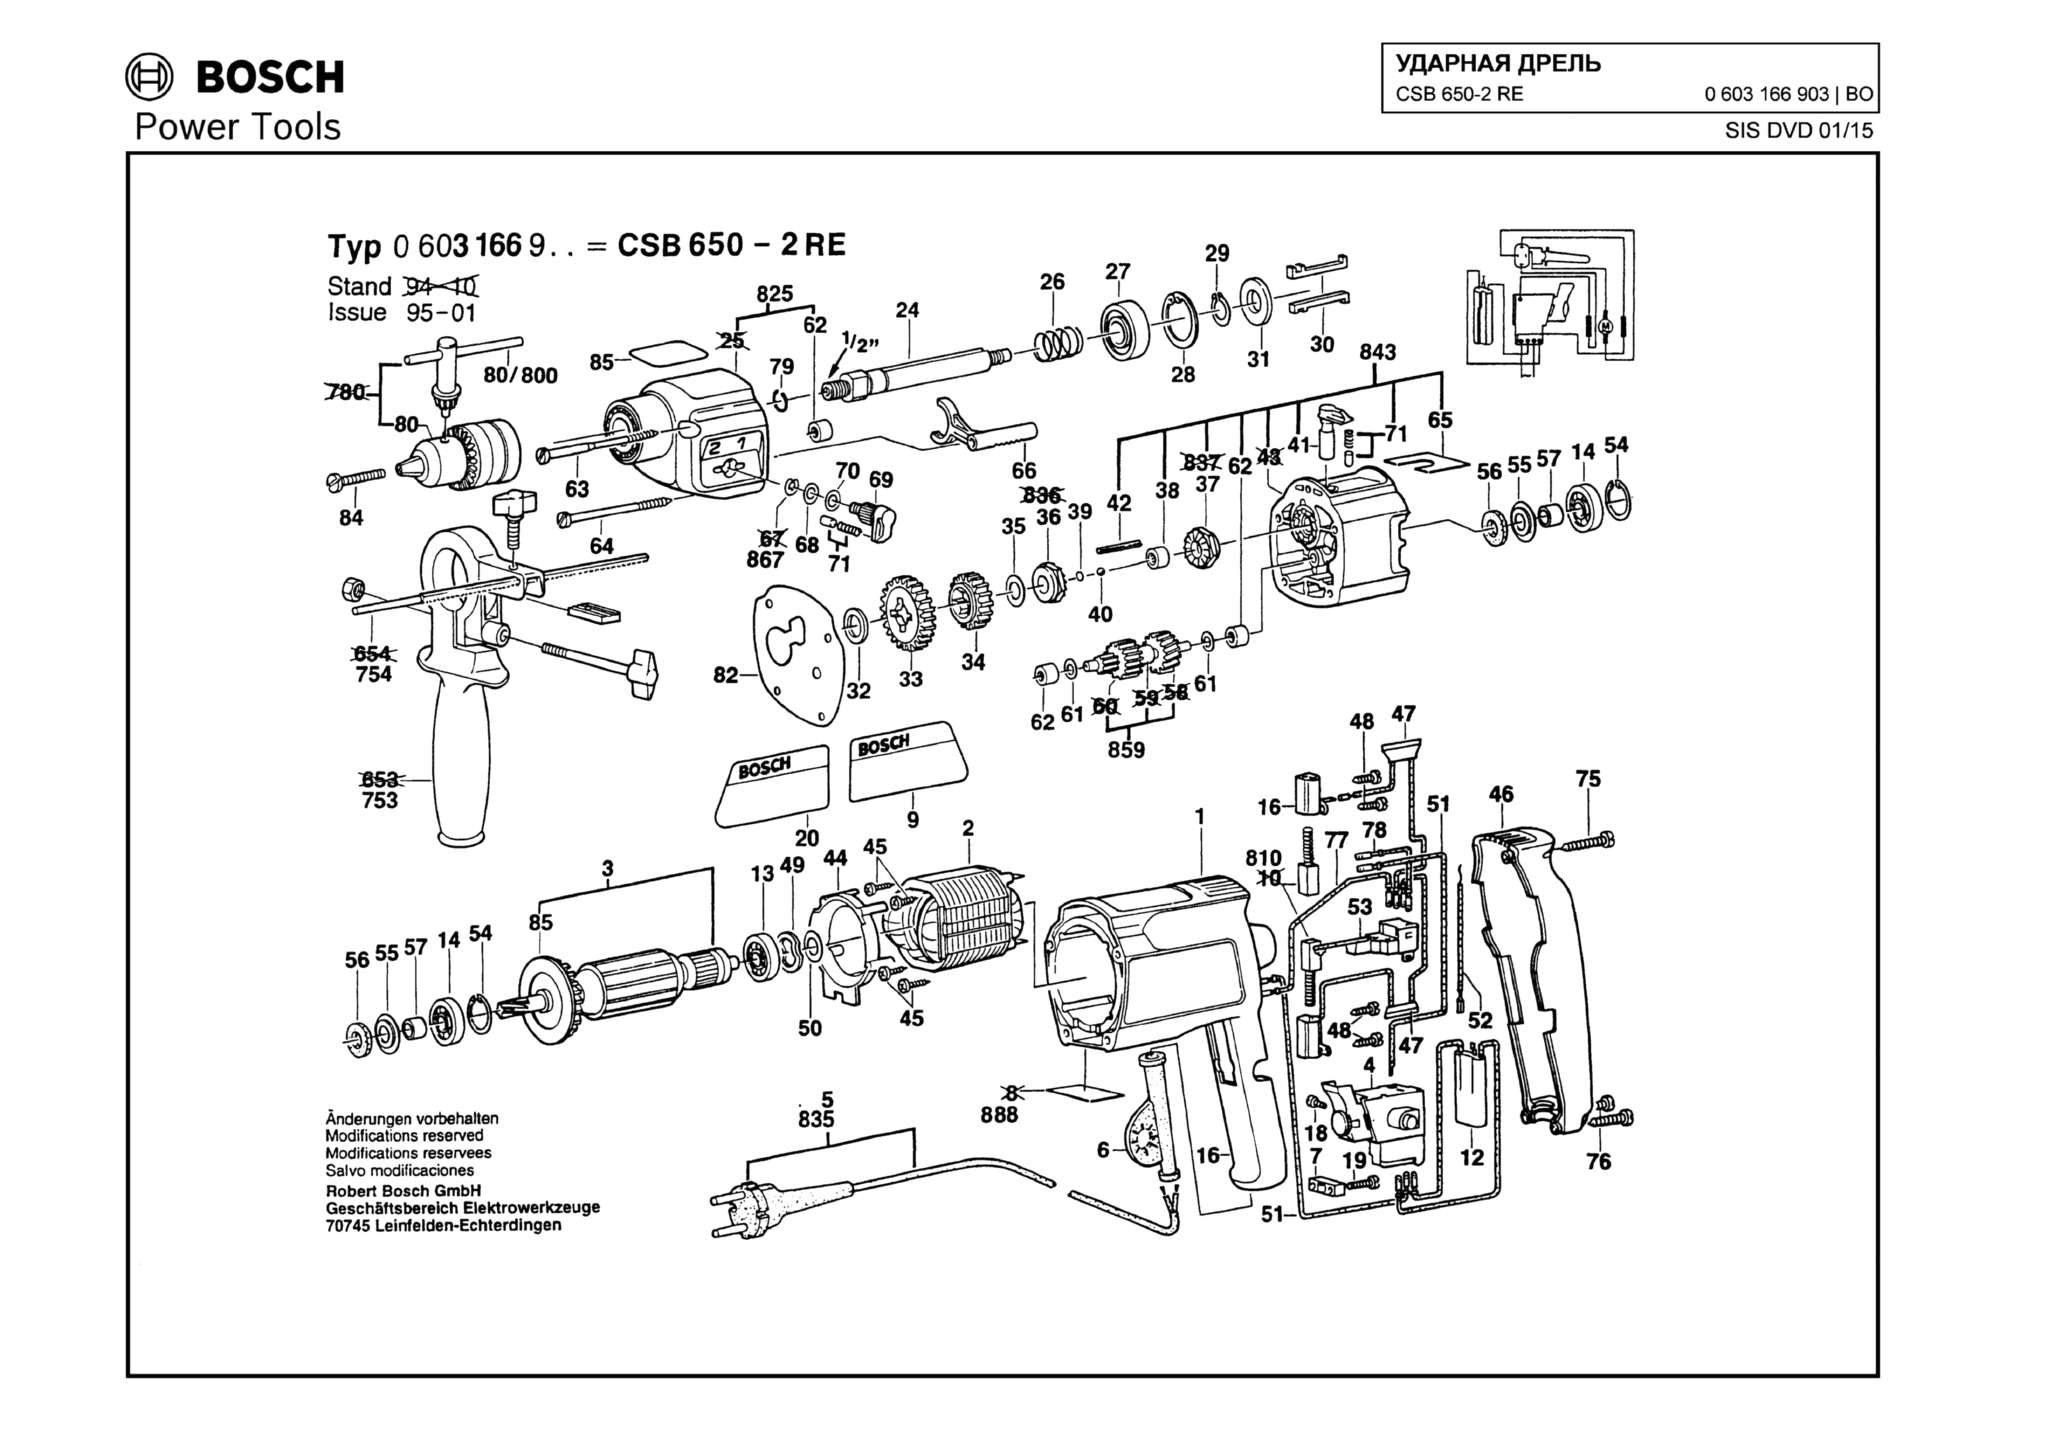 Запчасти, схема и деталировка Bosch CSB 650-2 RE (ТИП 0603166903)